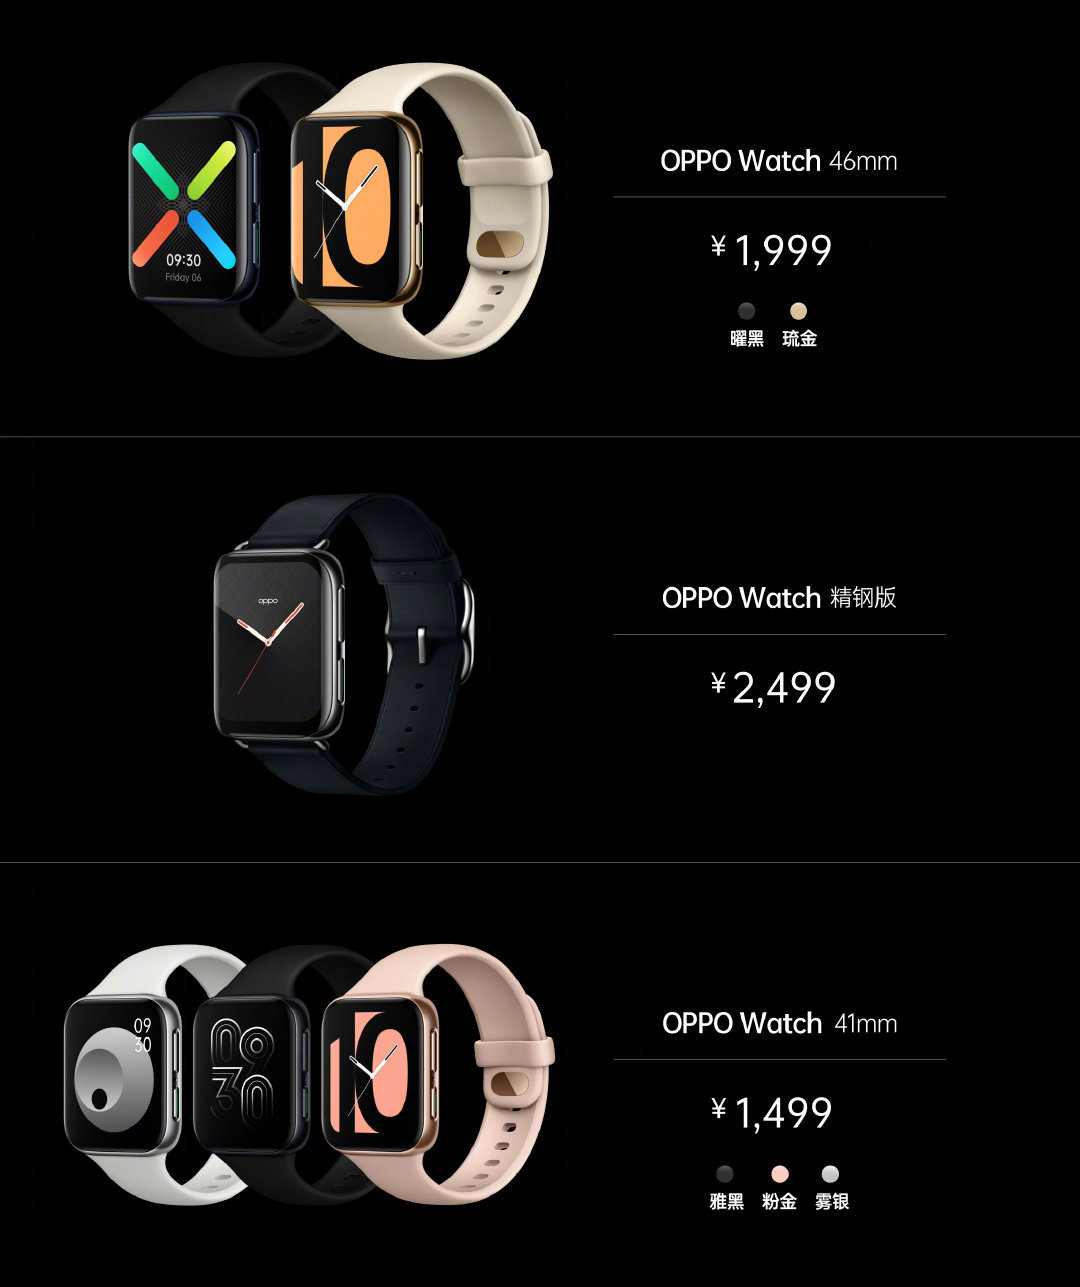 OPPO Watch 真·智能手表发布，搭载ColorOS系统、可独立通话 售价仅1499元起 